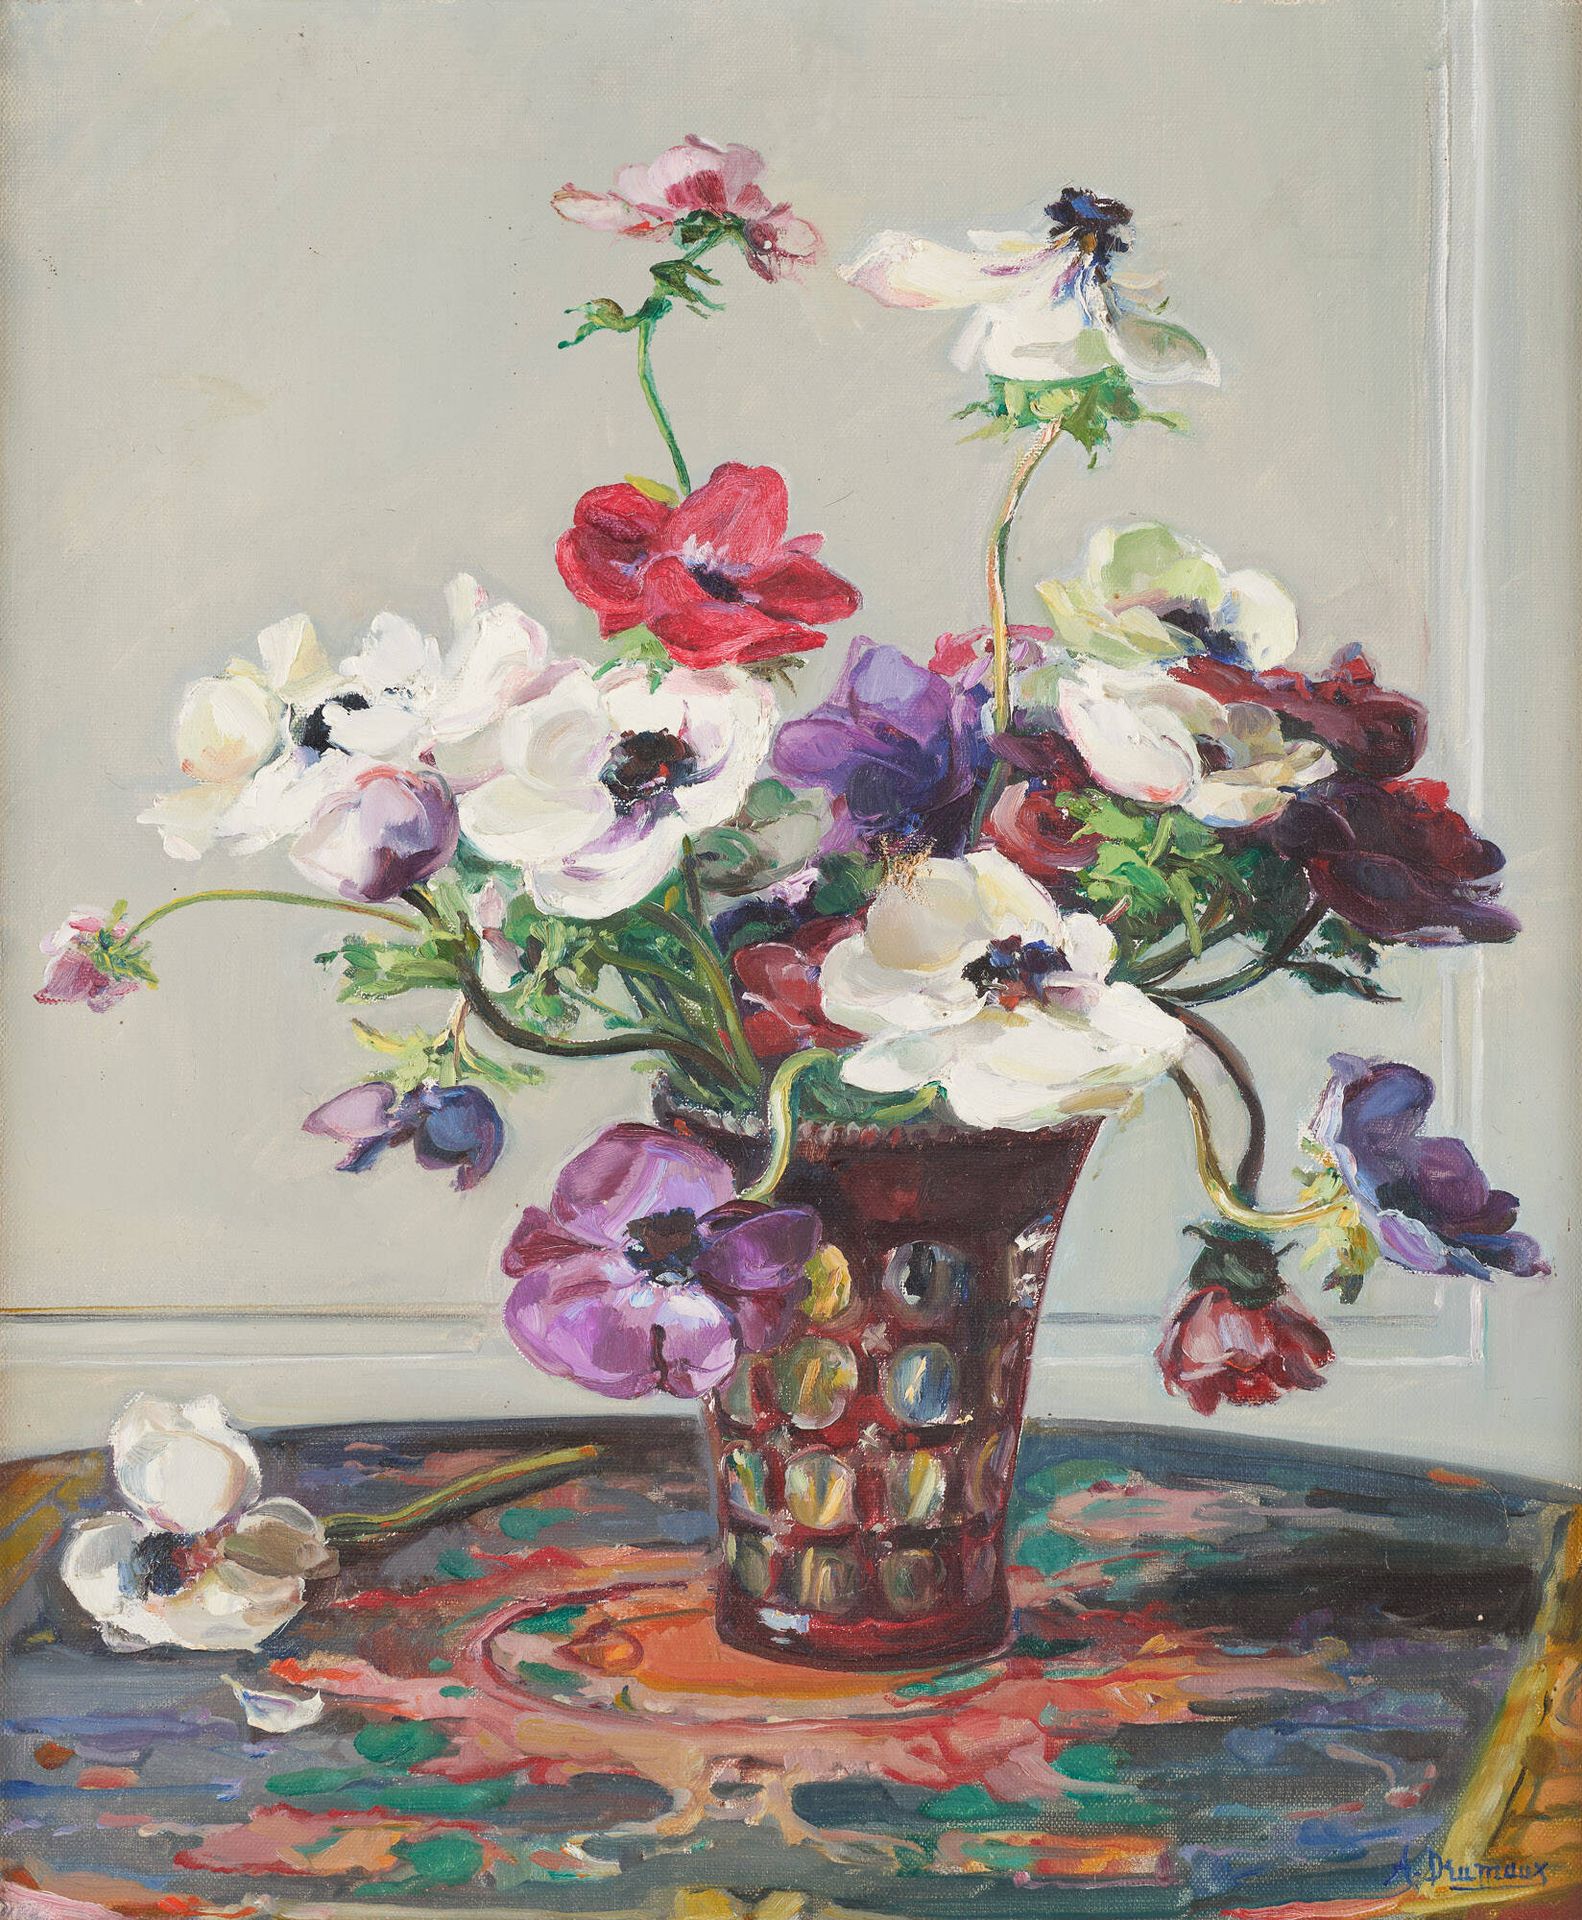 Angelina DRUMAUX École belge (1881-1959) Huile sur toile: Composition florale da&hellip;